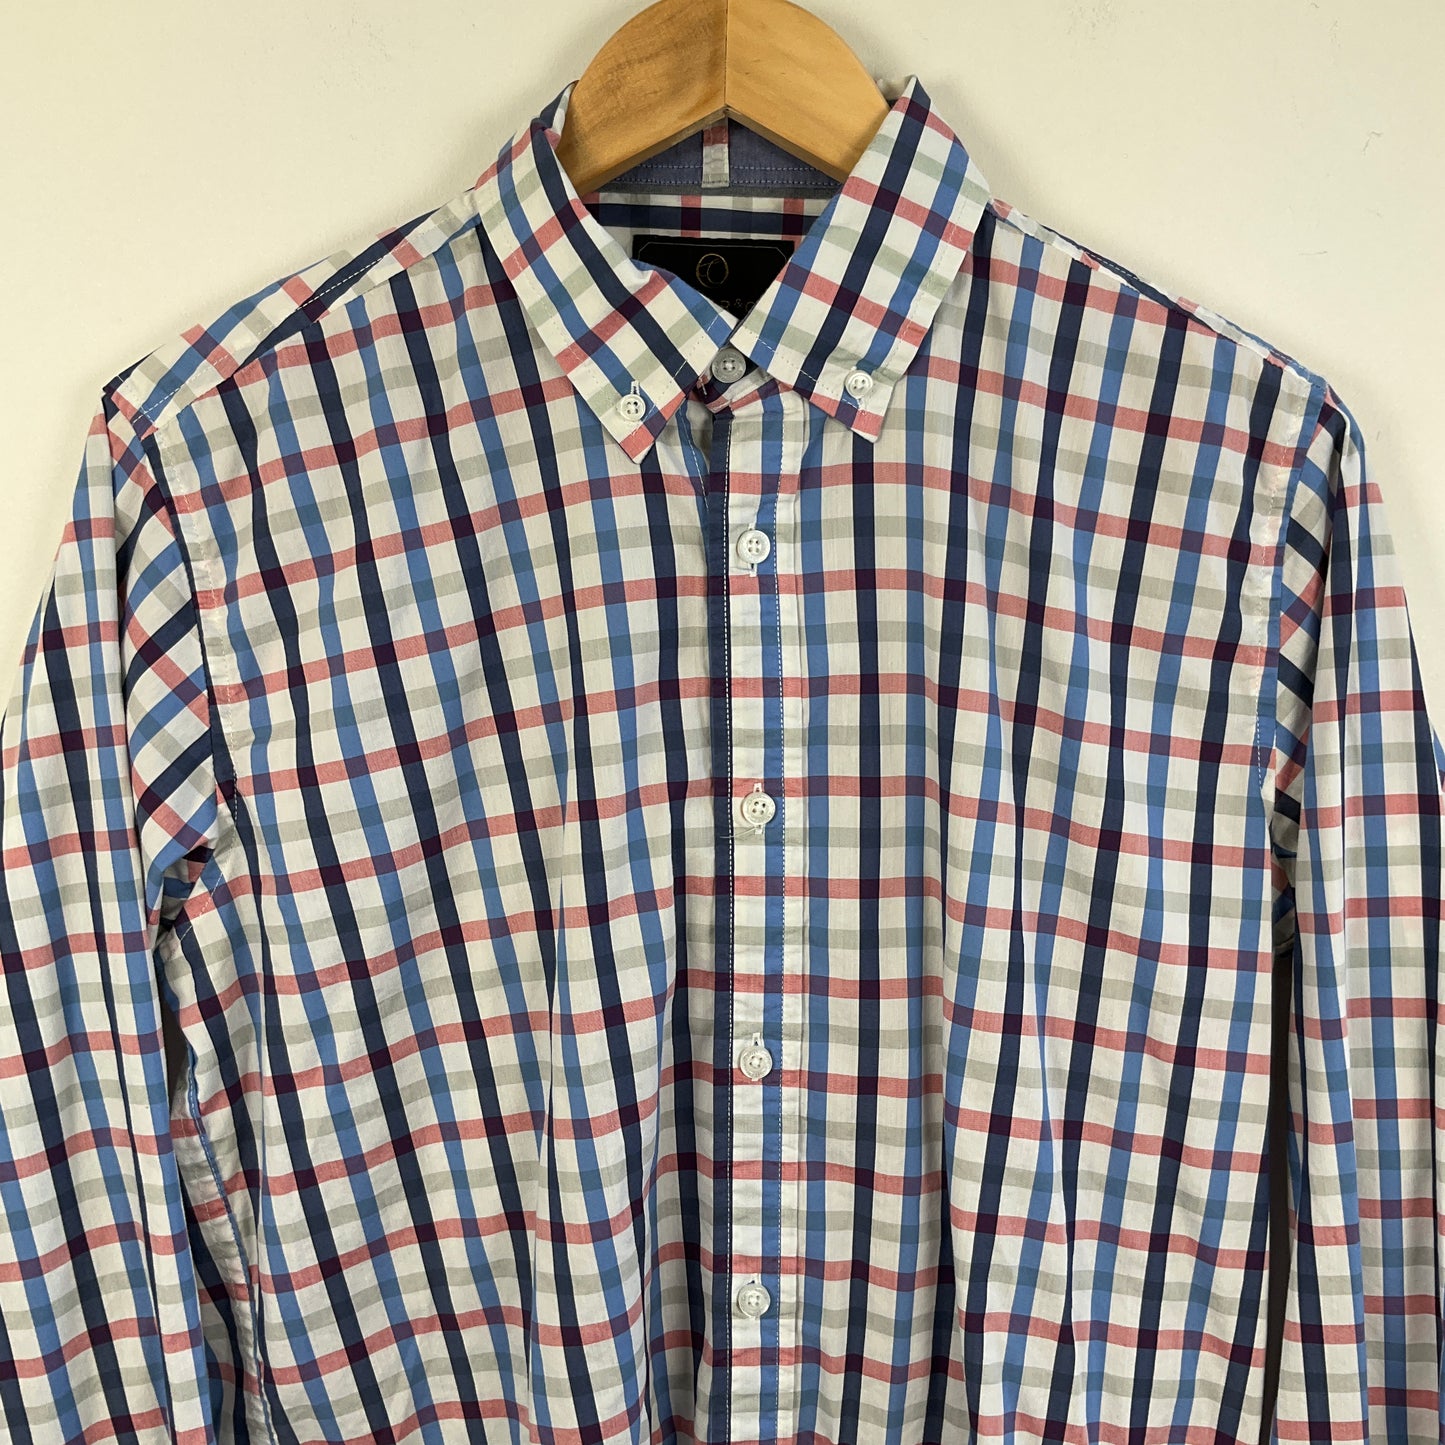 Cutler & Co - Long Sleeve Shirt